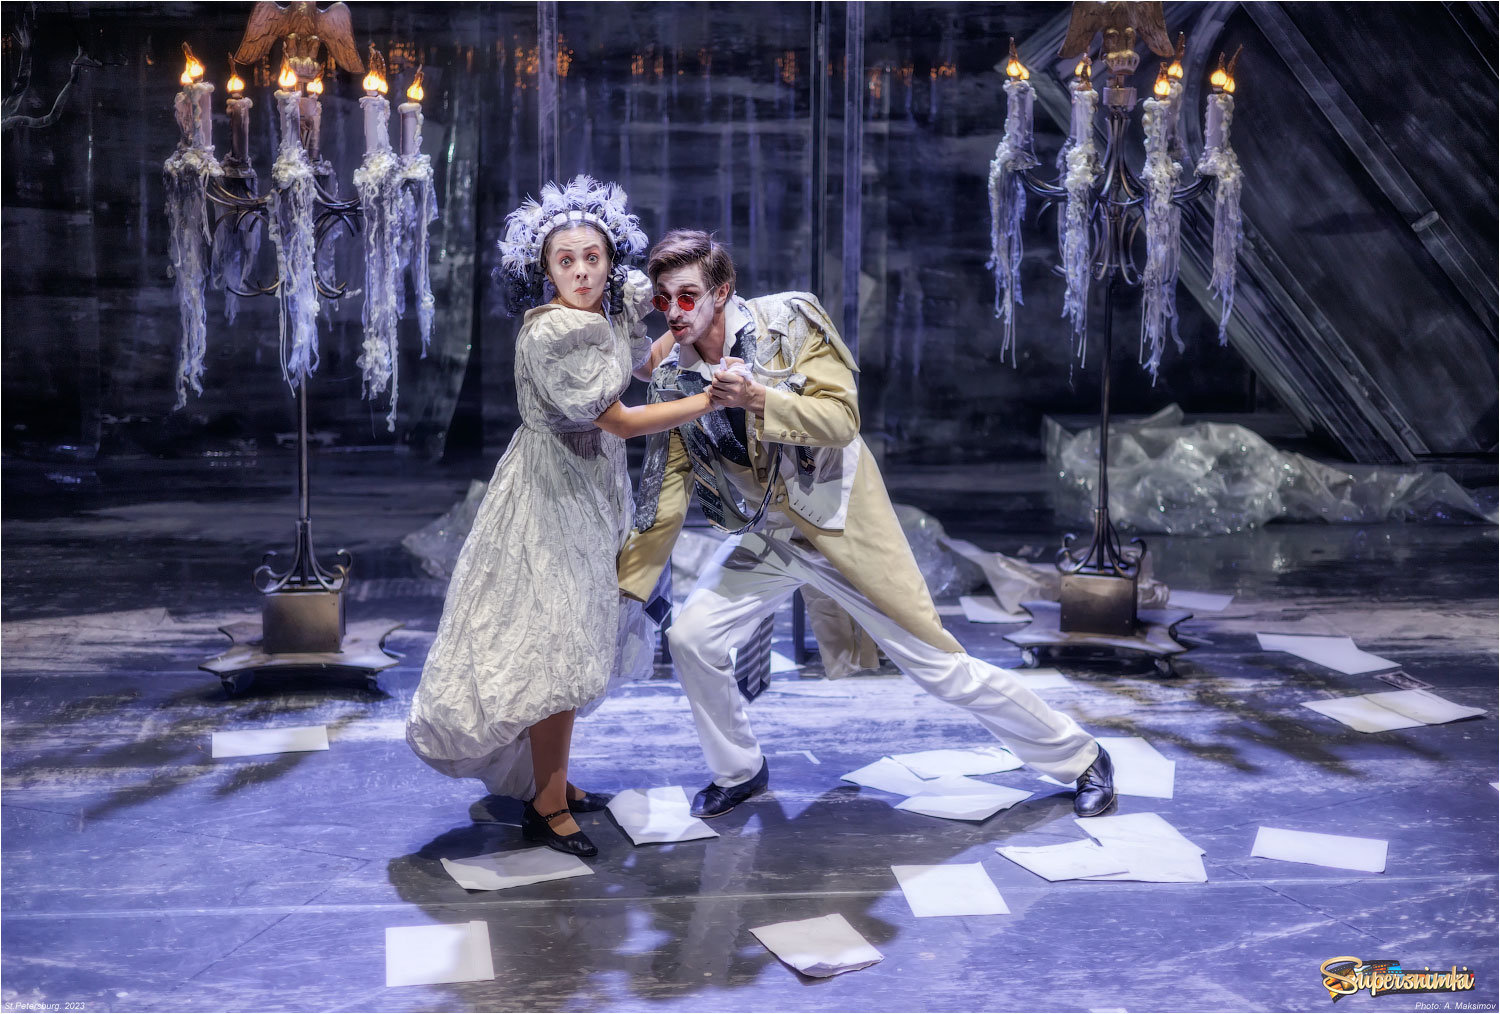 Актёры Виктория Зайцева и Александр Муравицкий в спектакле "Пиковая дама".